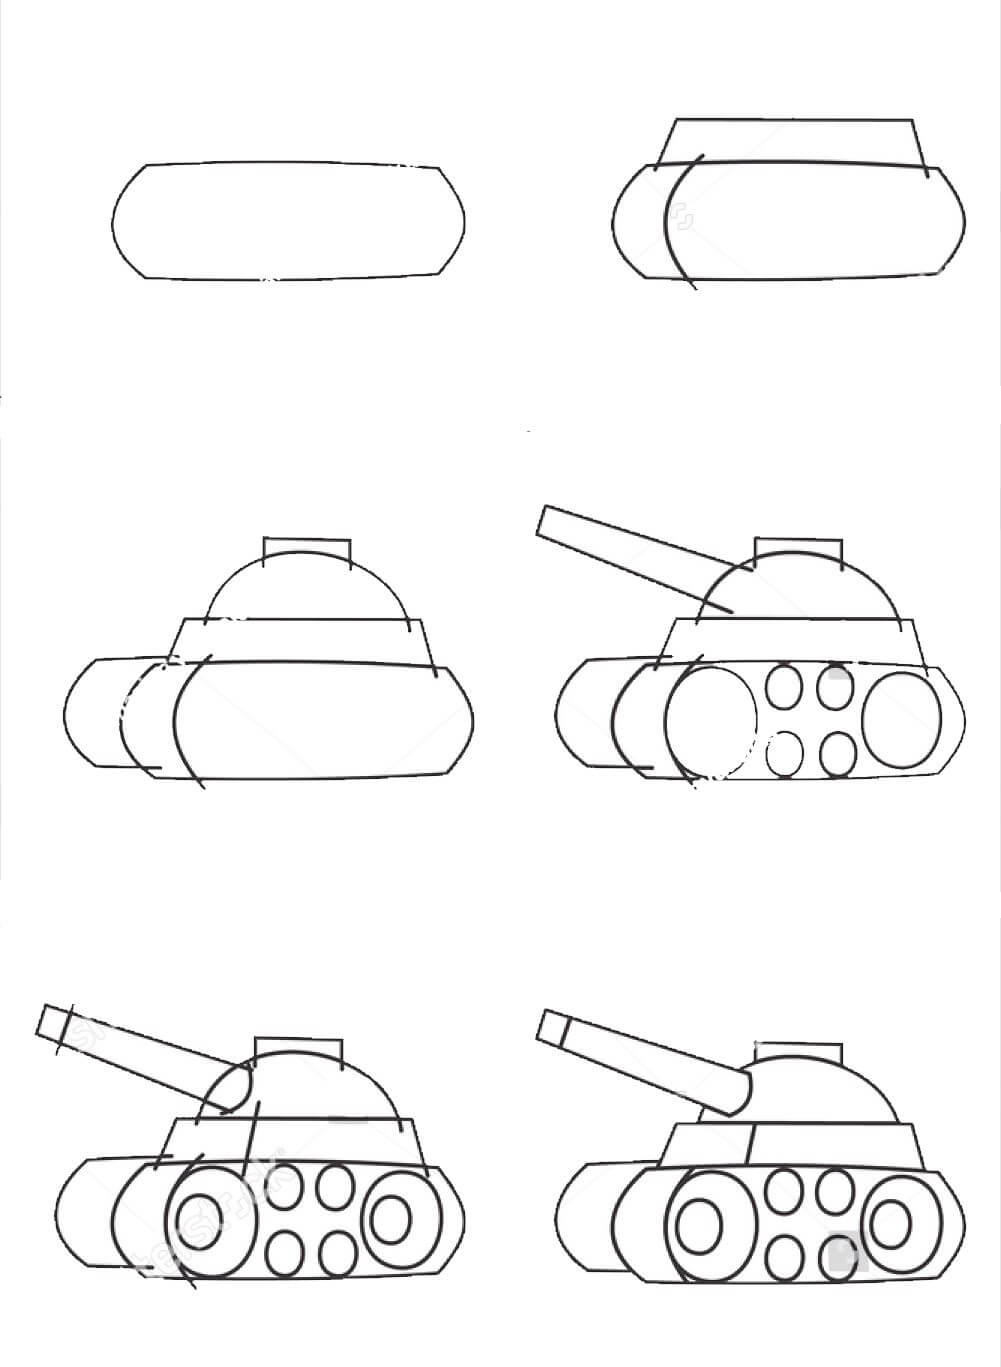 Panzeridee (23) zeichnen ideen